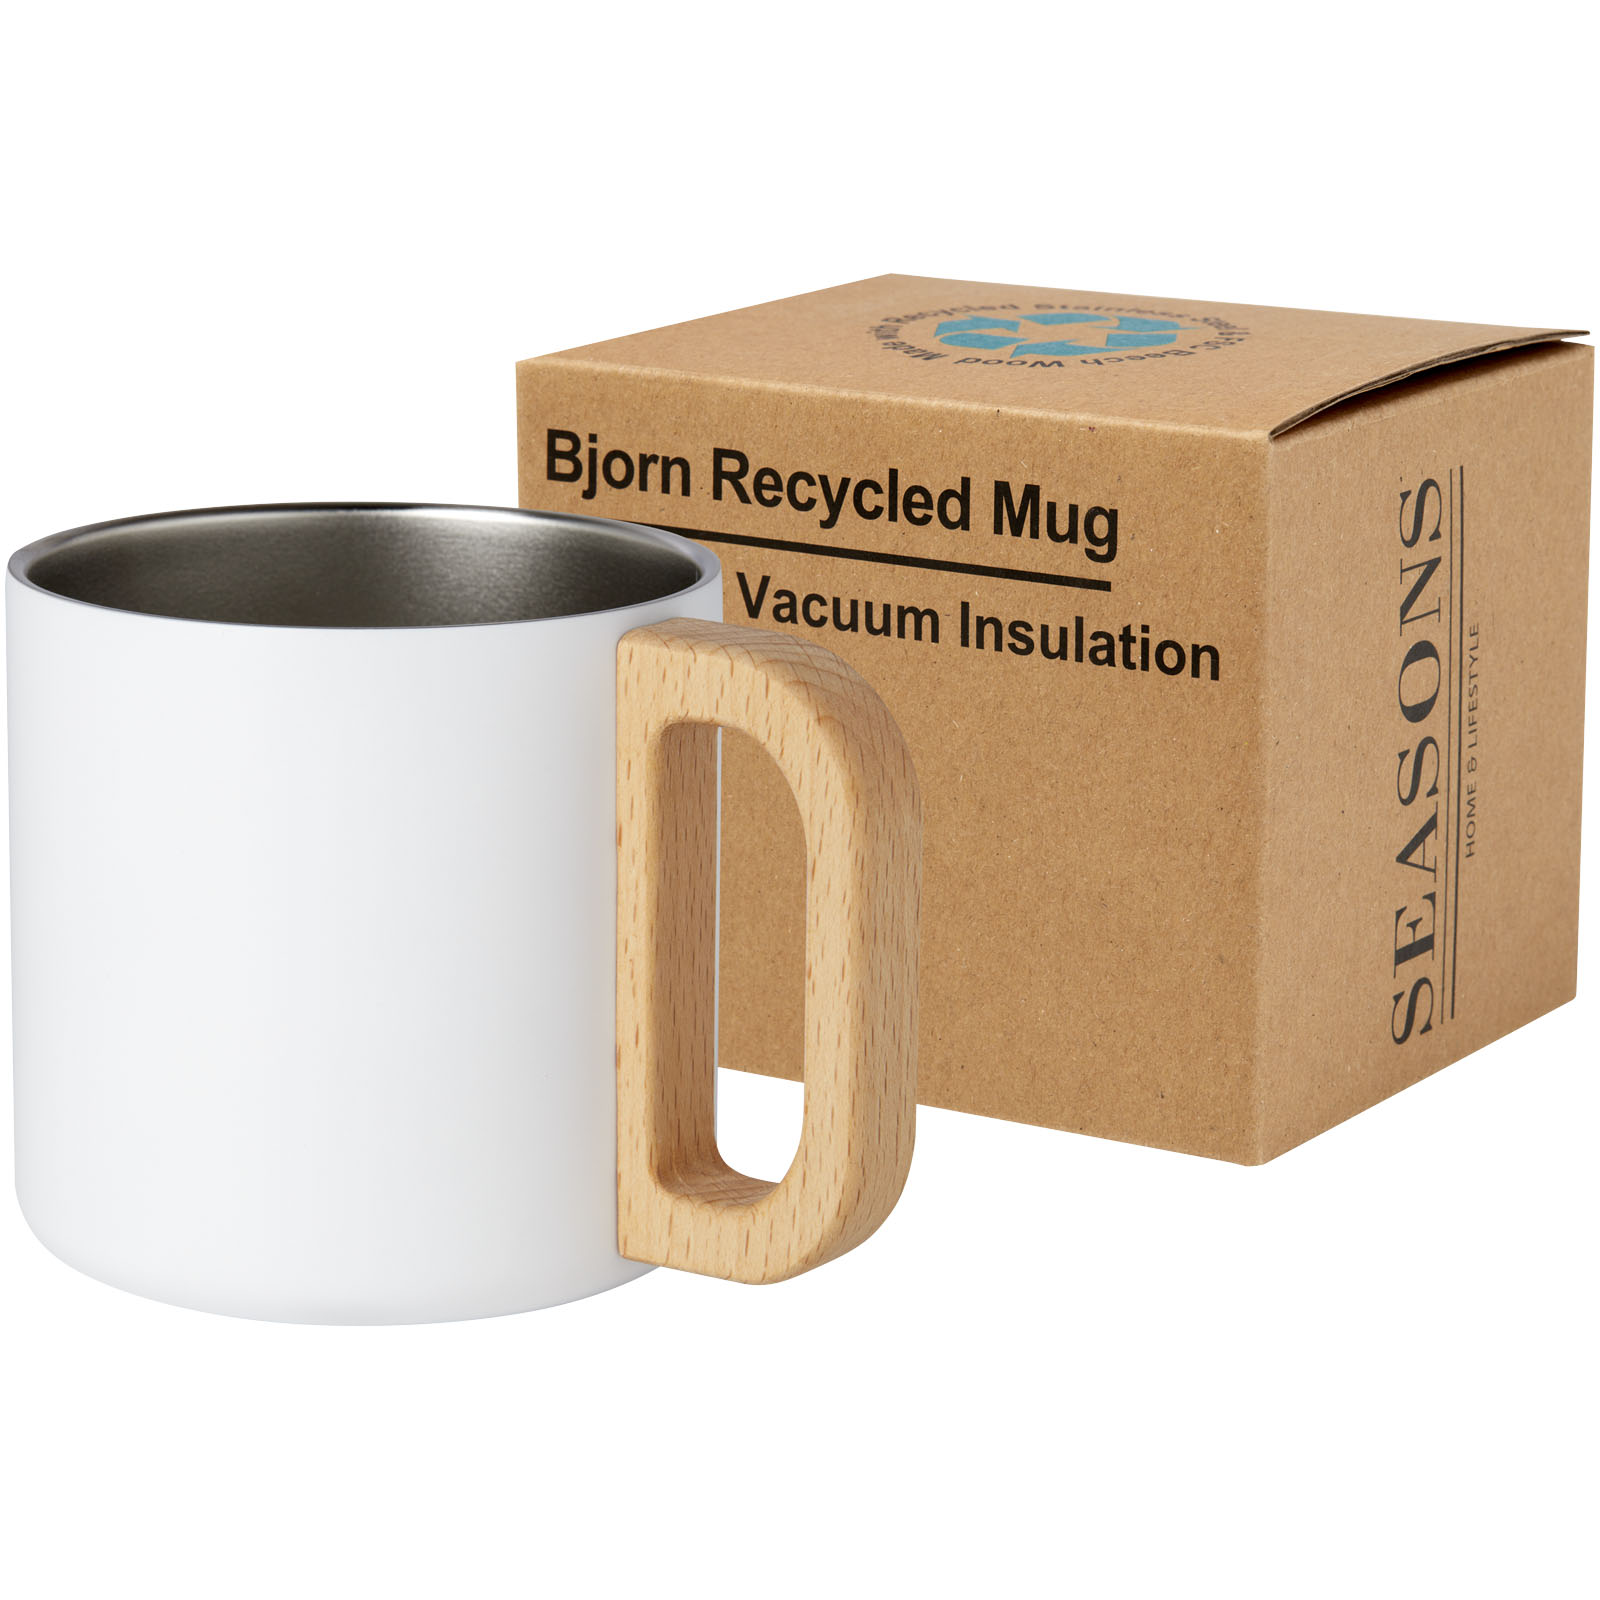 Mugs isothermes - Tasse Bjorn de 360 ml en acier inoxydable recyclé certifiée RCS avec isolation sous vide et couche de cuivre 